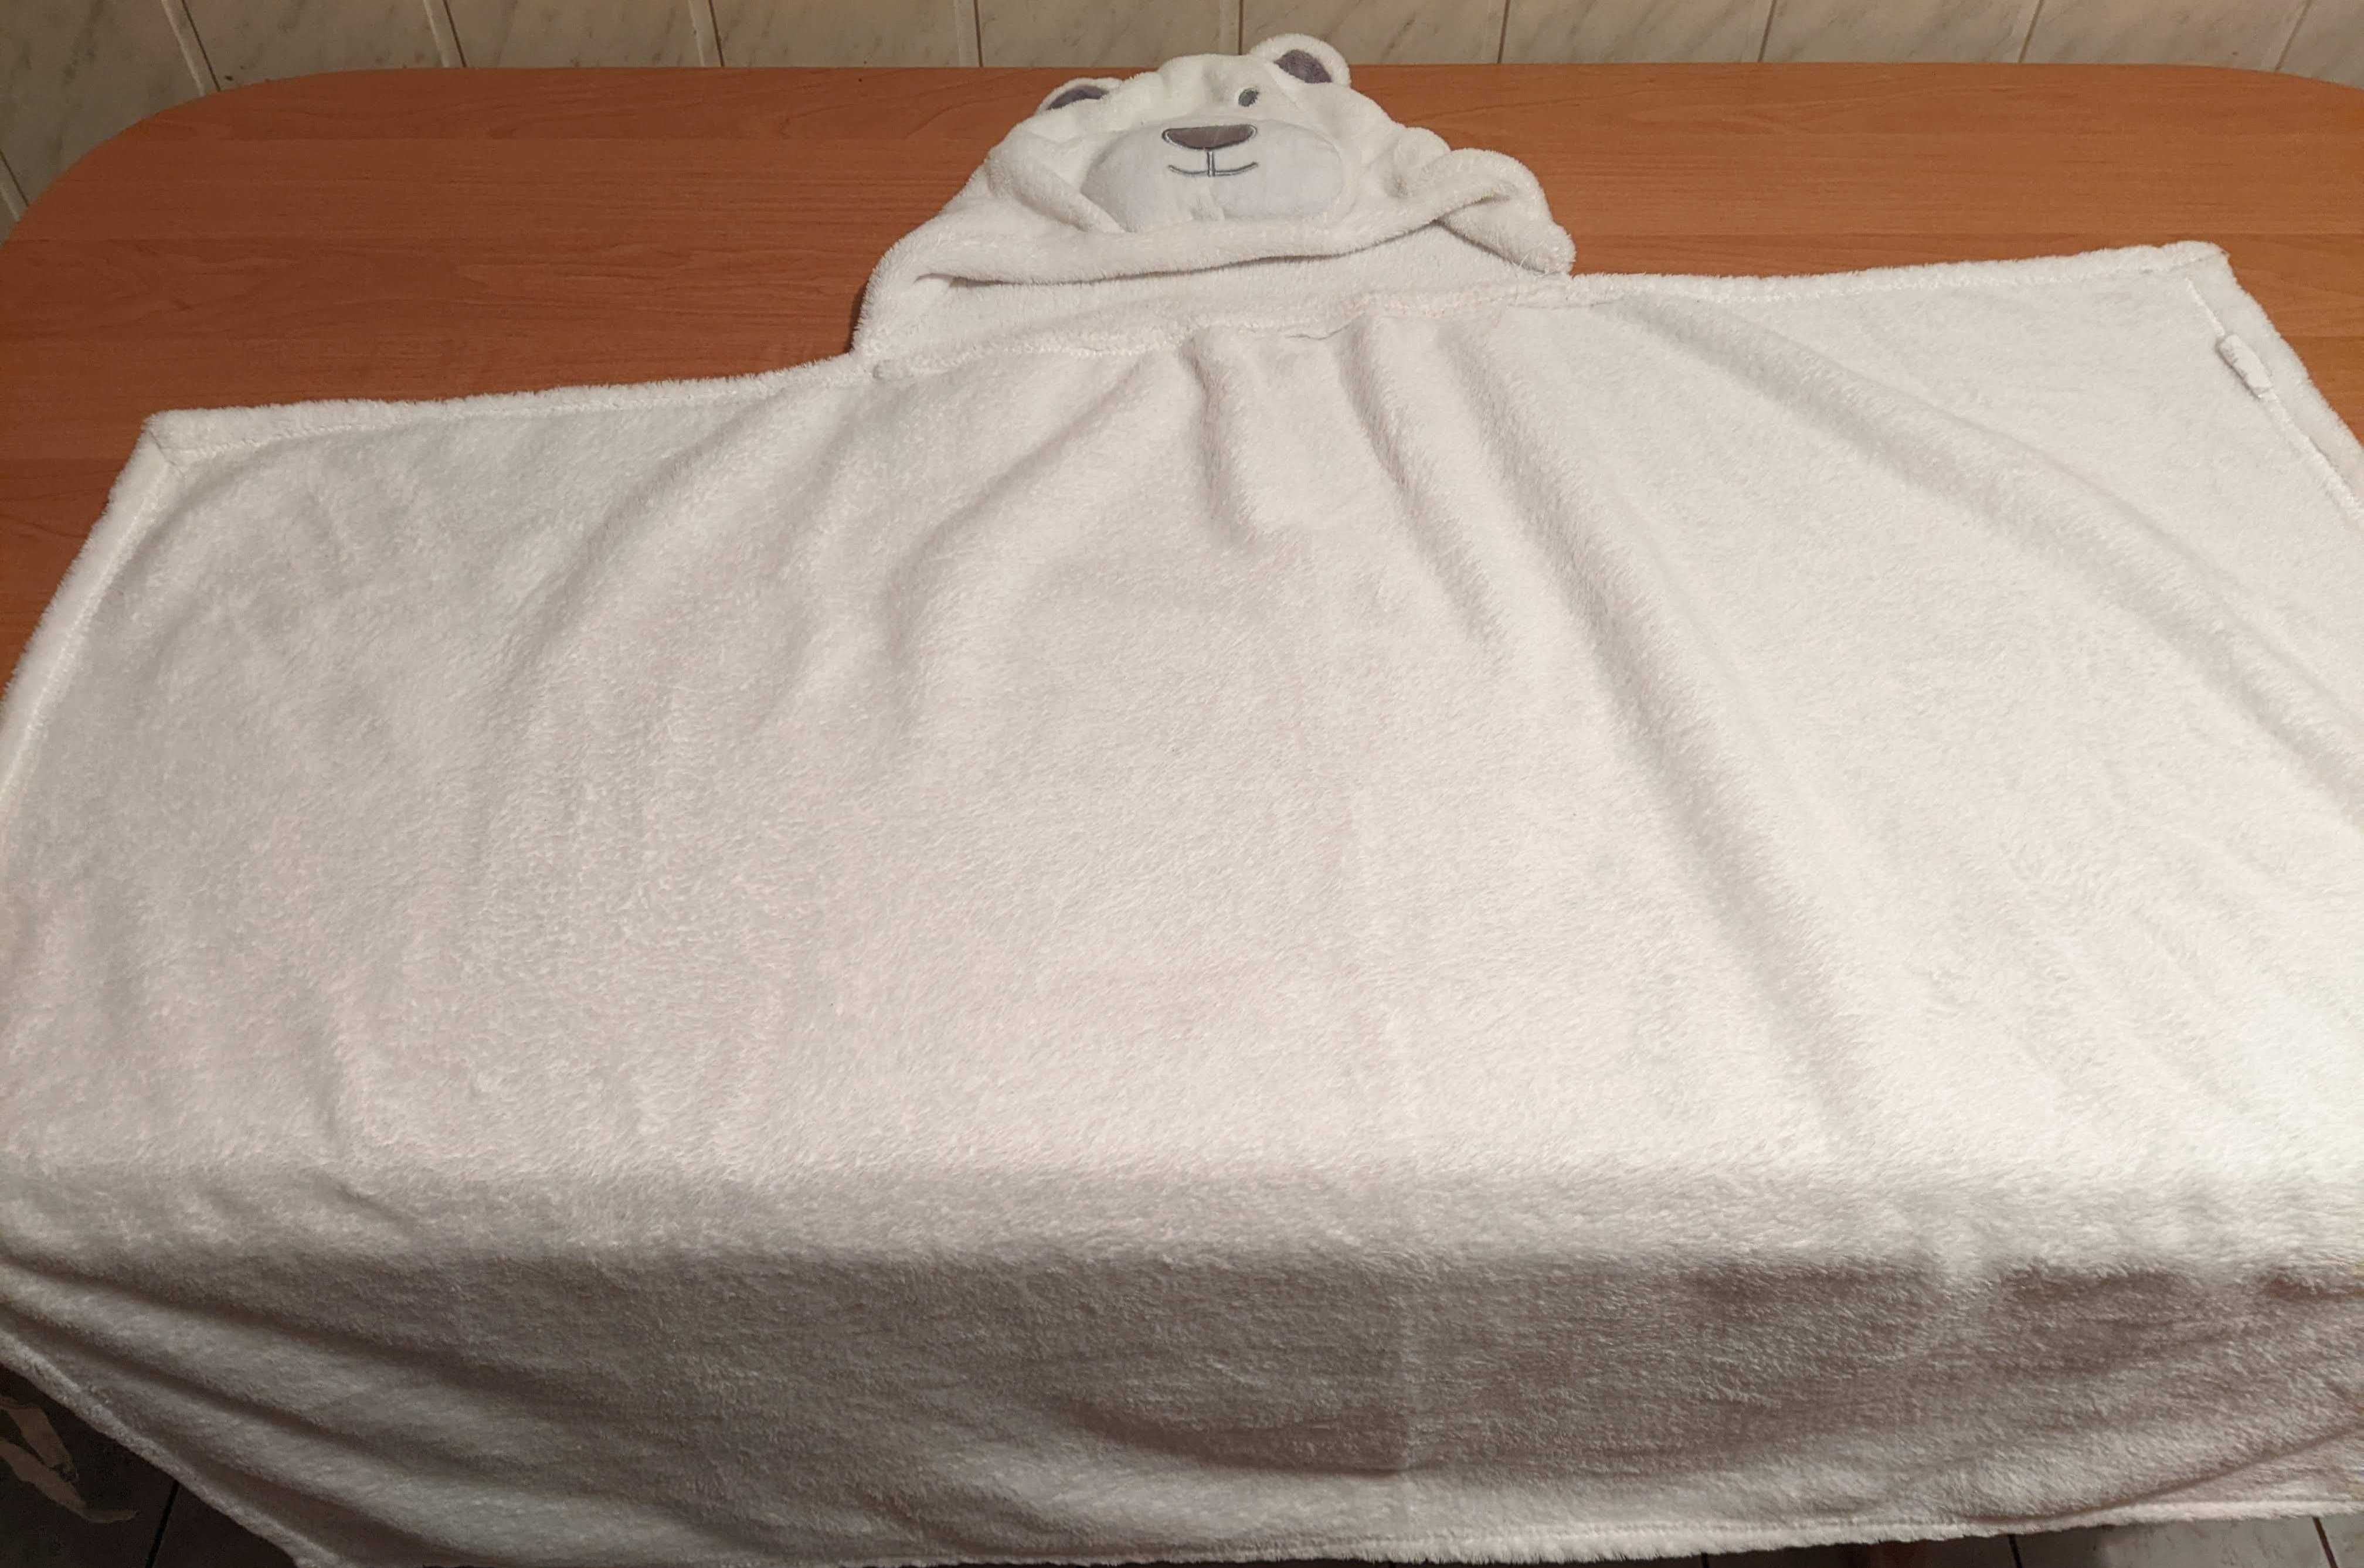 Biały ręcznik miś z kapturem, wymiary 80 x 100 cm - nowy